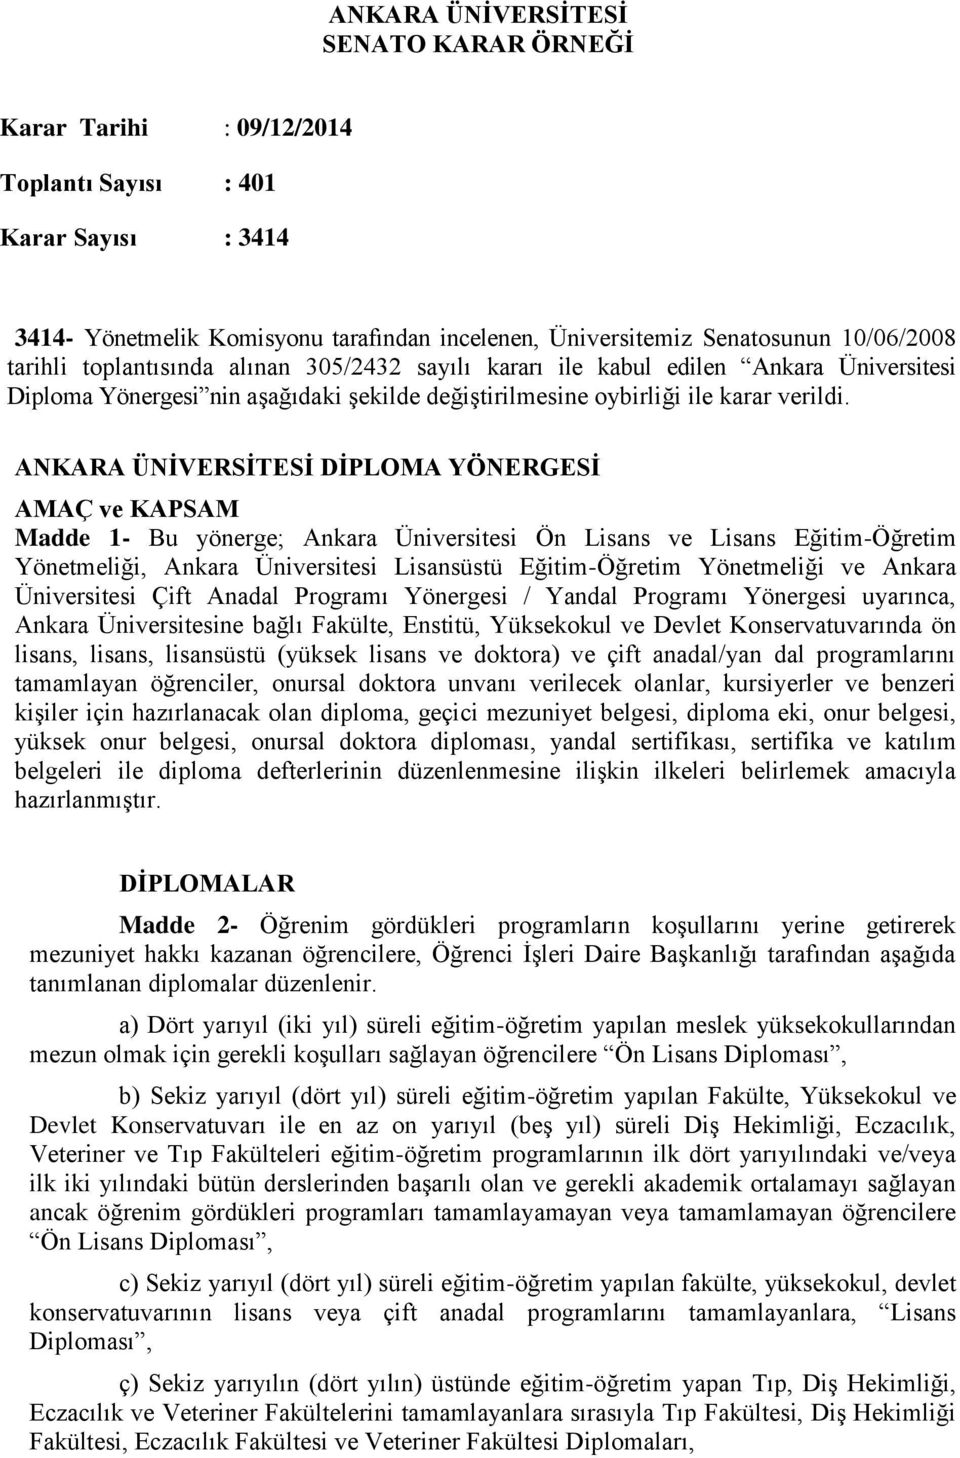 ANKARA ÜNİVERSİTESİ DİPLOMA YÖNERGESİ AMAÇ ve KAPSAM Madde 1- Bu yönerge; Ankara Üniversitesi Ön Lisans ve Lisans Eğitim-Öğretim Yönetmeliği, Ankara Üniversitesi Lisansüstü Eğitim-Öğretim Yönetmeliği